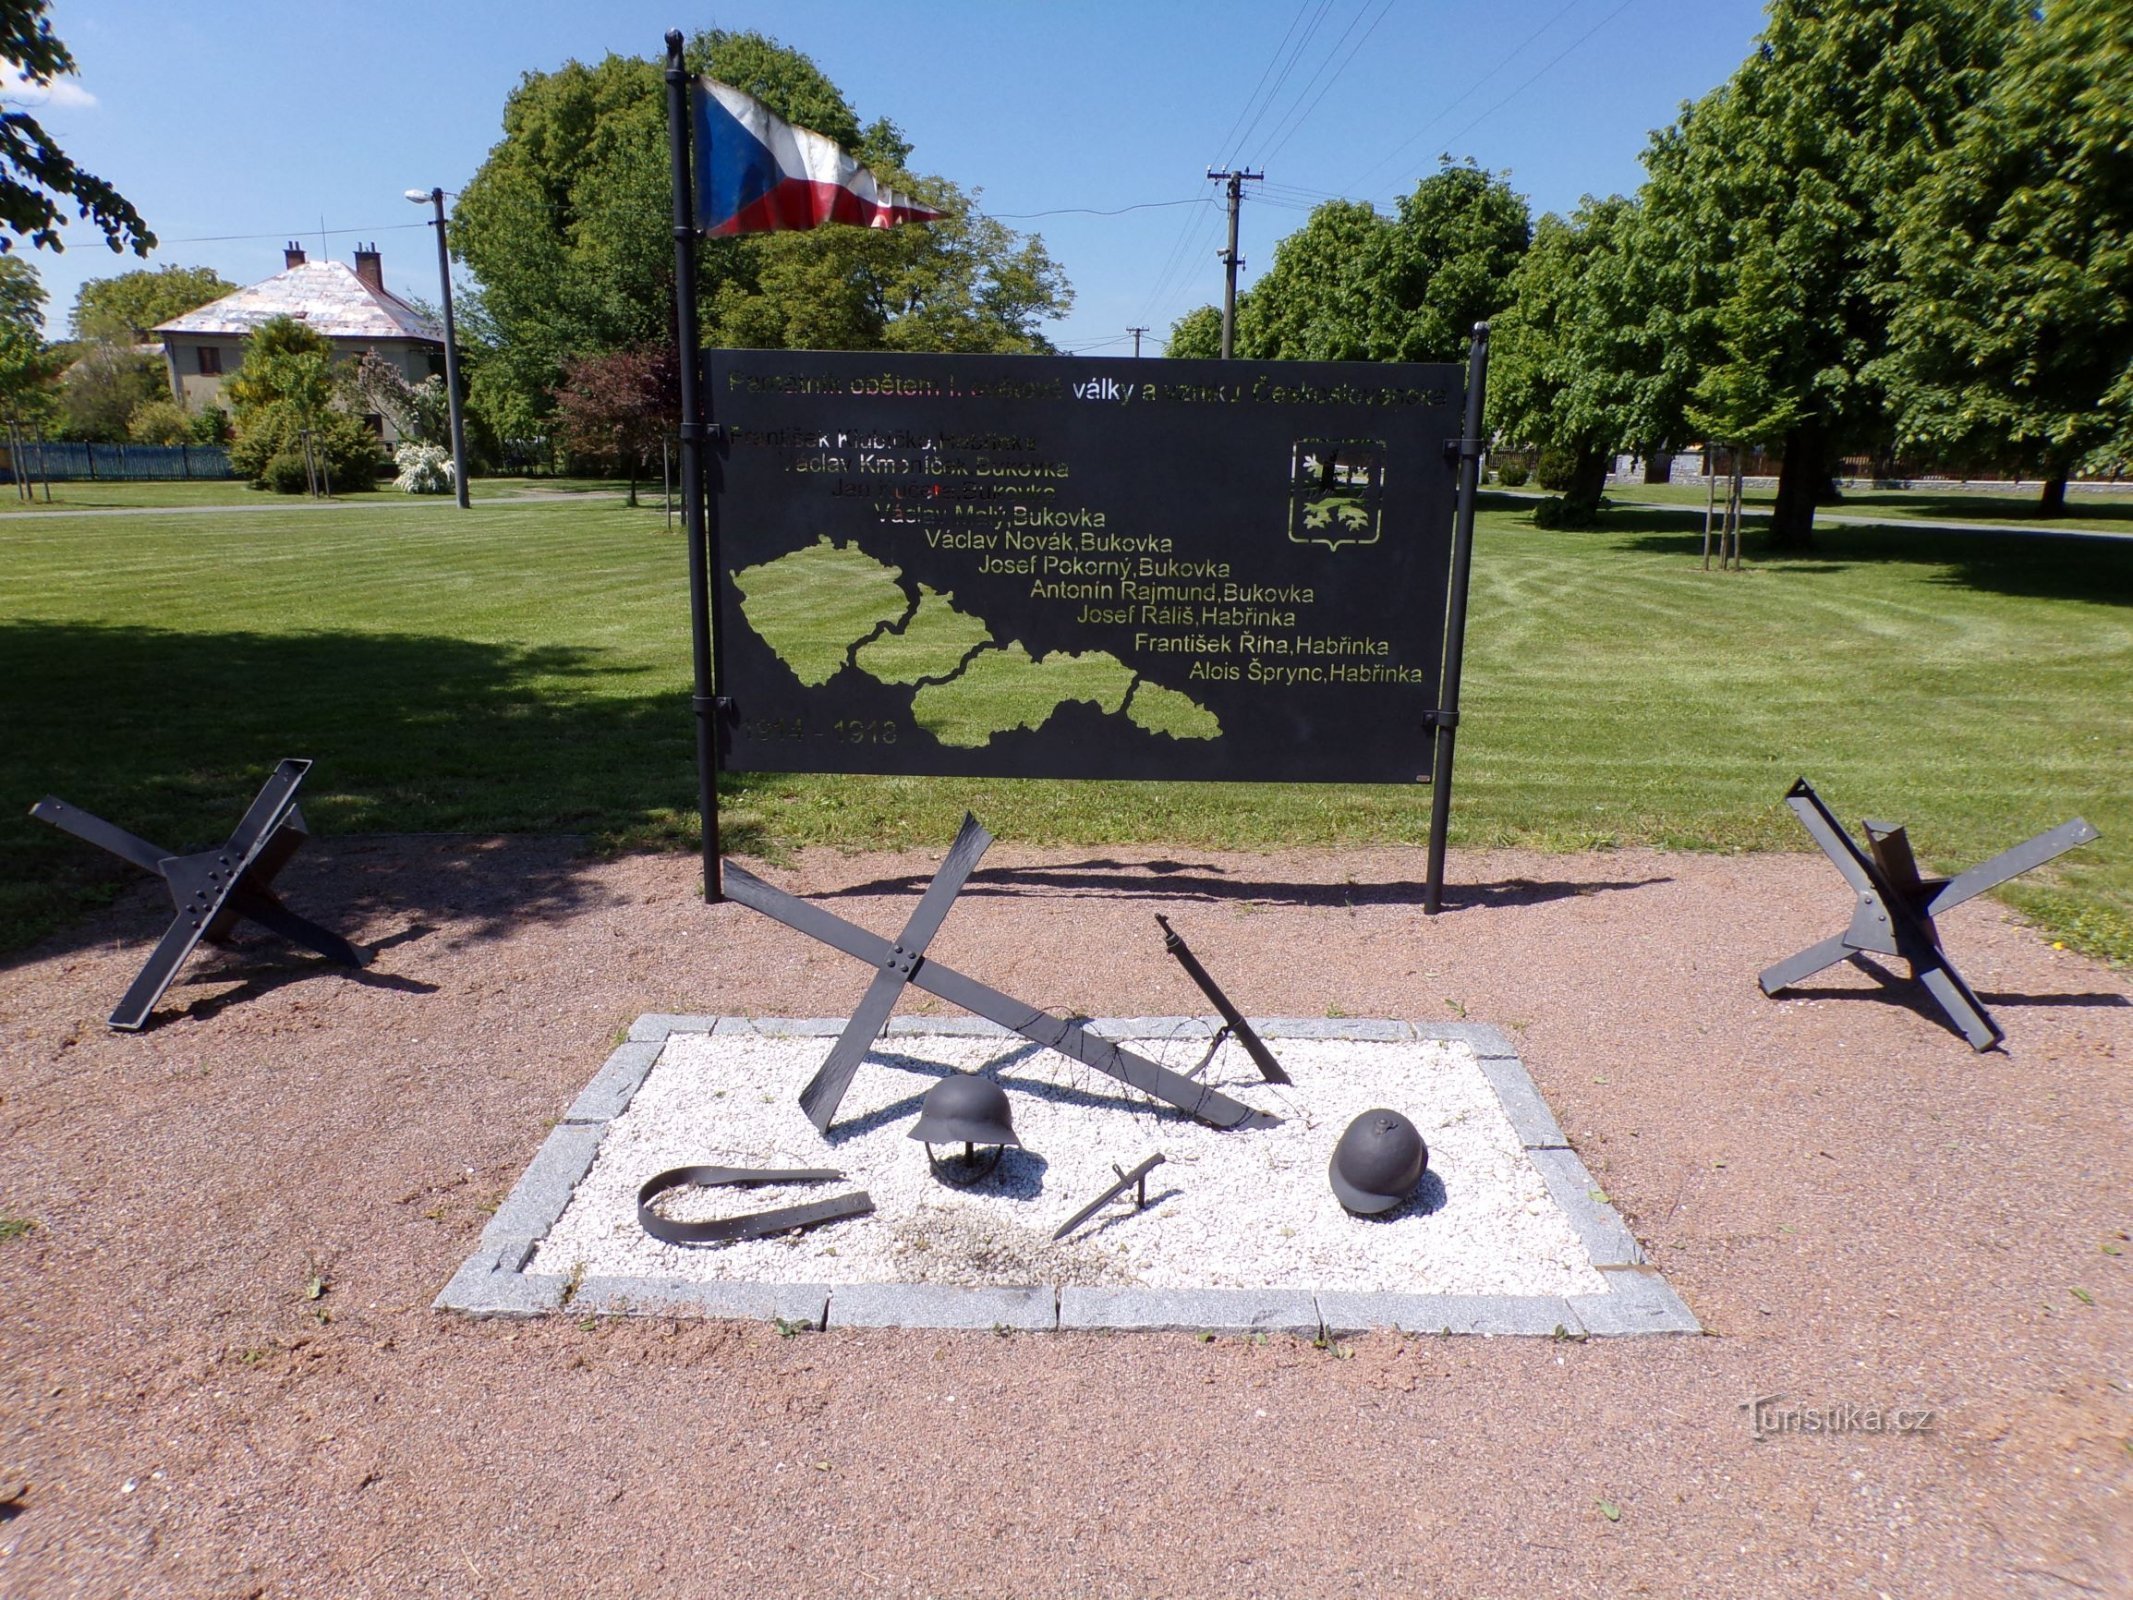 Меморіал жертвам Першої світової війни та створення Чехословаччини (Габржинка, 1 червня 3.6.2021 р.)